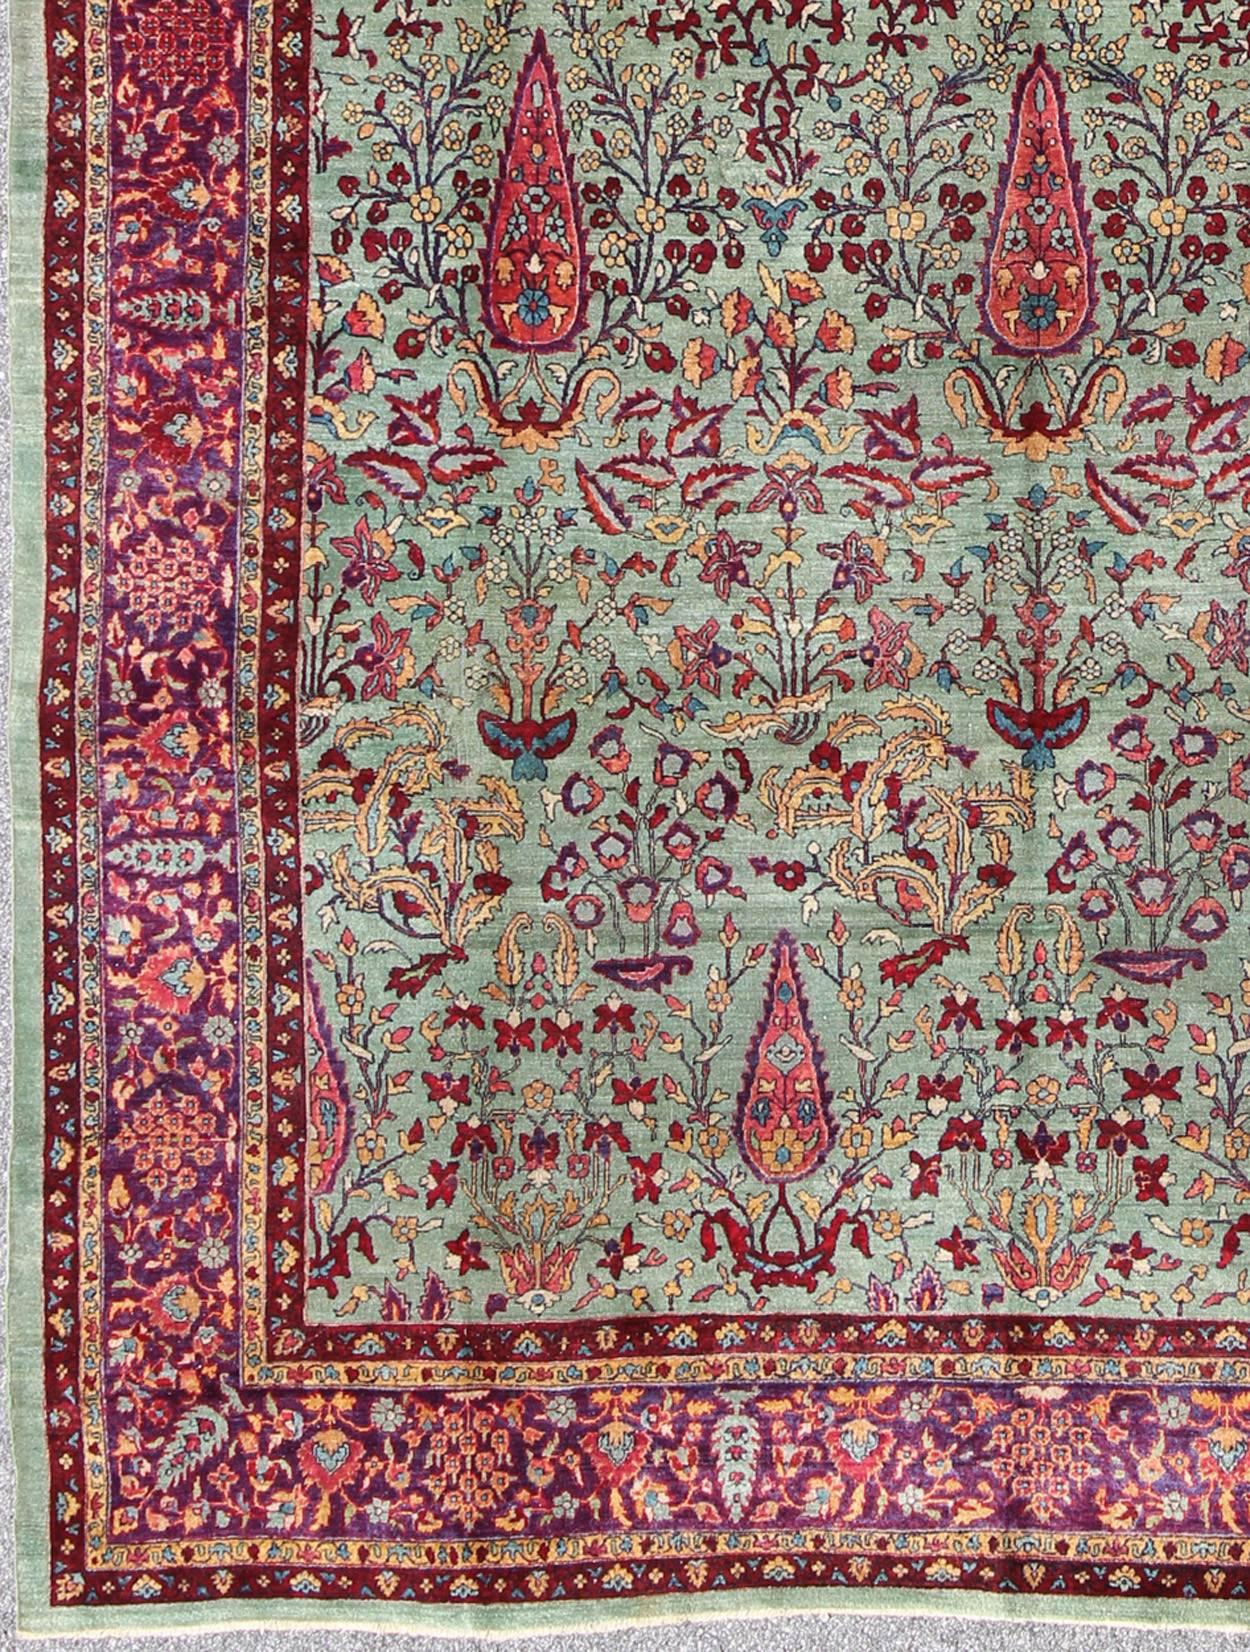 Antiker Agra-Teppich mit verzweigtem Blumenmuster in Mintgrün und Burgund, Teppich CIND-8061, Herkunftsland / Typ: Indien / Agra, um 1900

Dieser prächtige alte Agra-Teppich (um 1900) beeindruckt durch sein großflächiges, durchgängiges Muster. Das